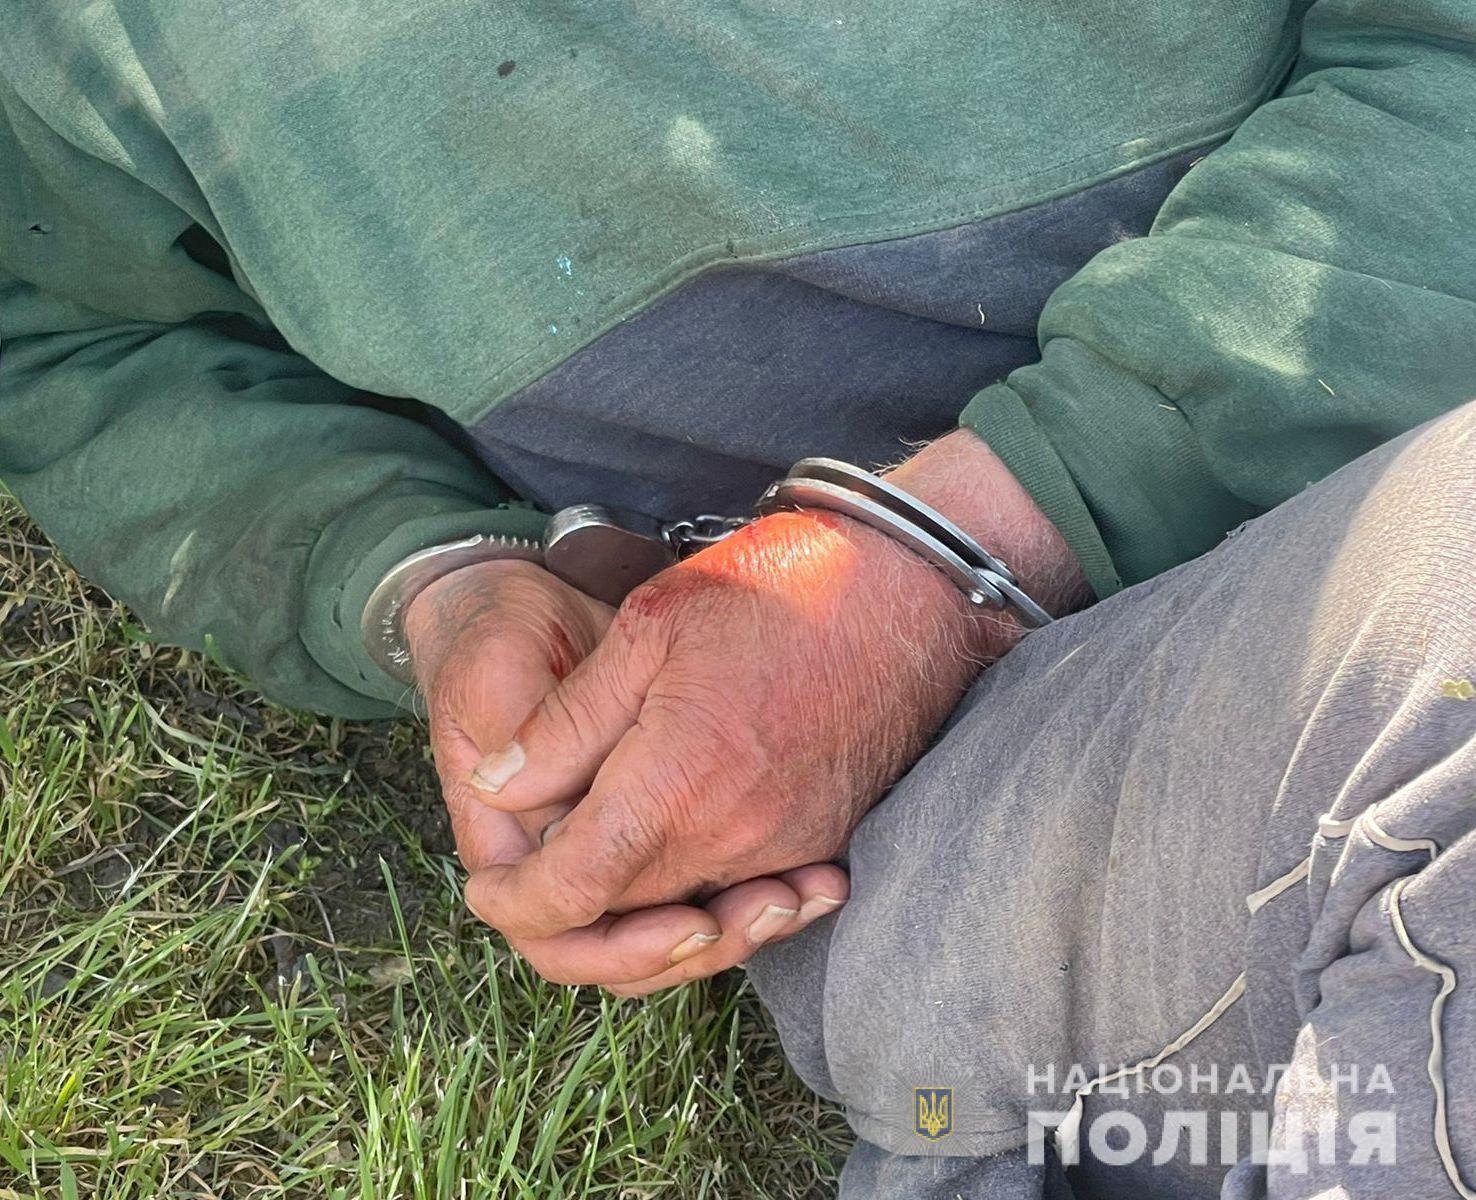 В Одесской области пенсионер тяжело ранил правоохранителя выстрелом из ружья. В ходе задержания погибла супруга стрелка